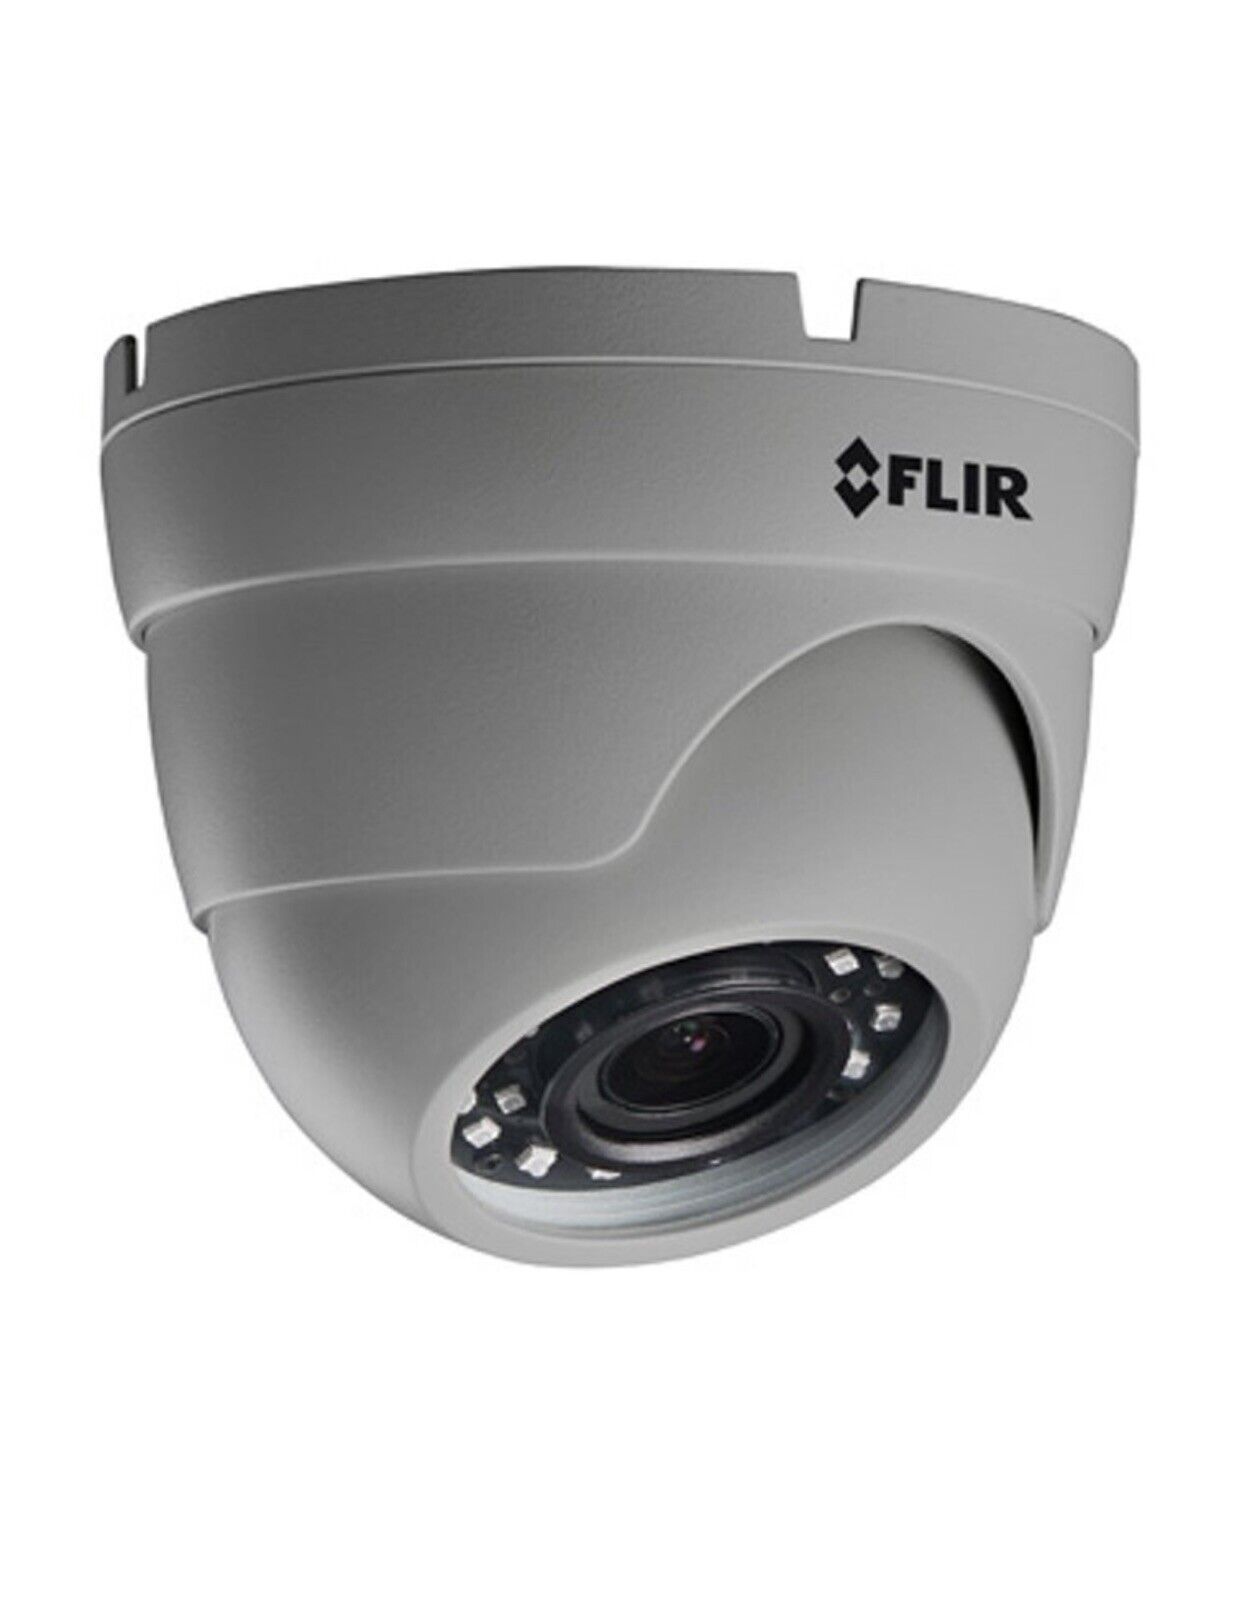 Flir C247ew2 2.1 Megapixel Hd Surveillance Camera, Monochrome, Color, Dome